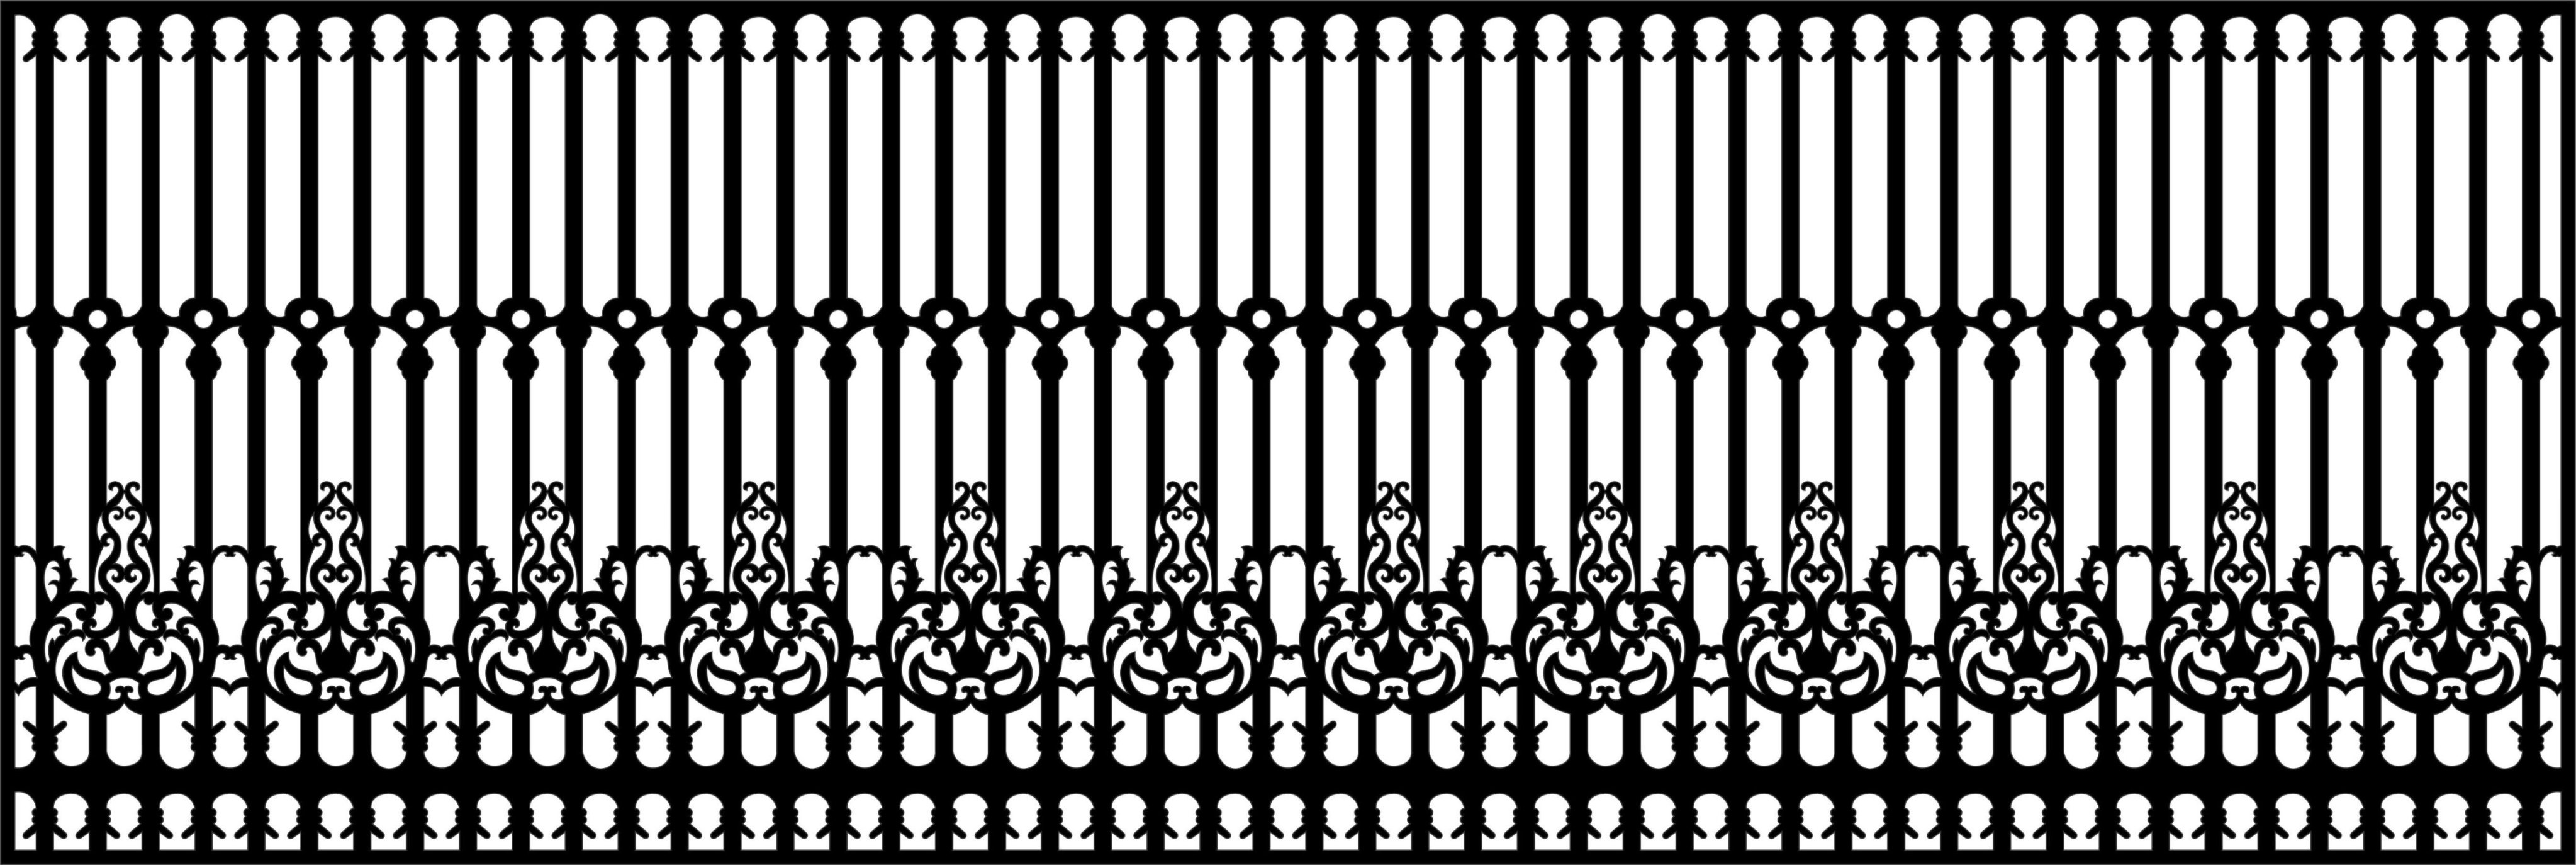 thiết kế hàng rào,hàng rào đẹp,cnc hàng rào,mẫu hàng rào cnc